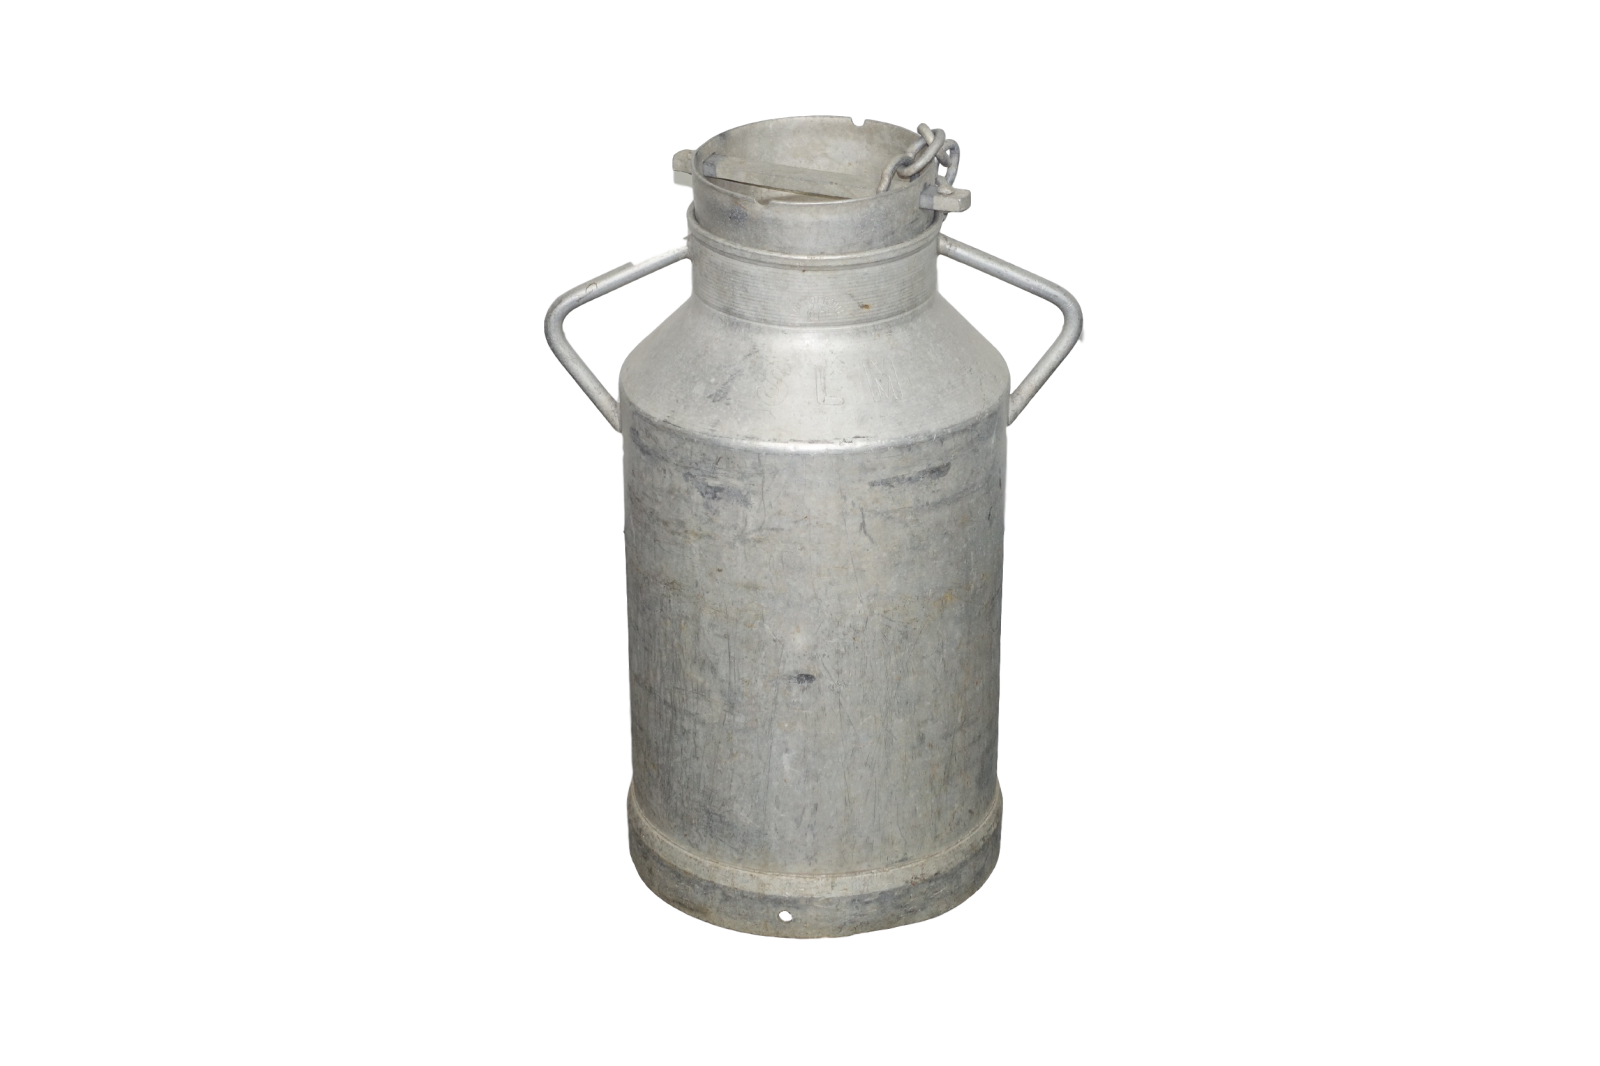 Rental of a real vintage milk jug